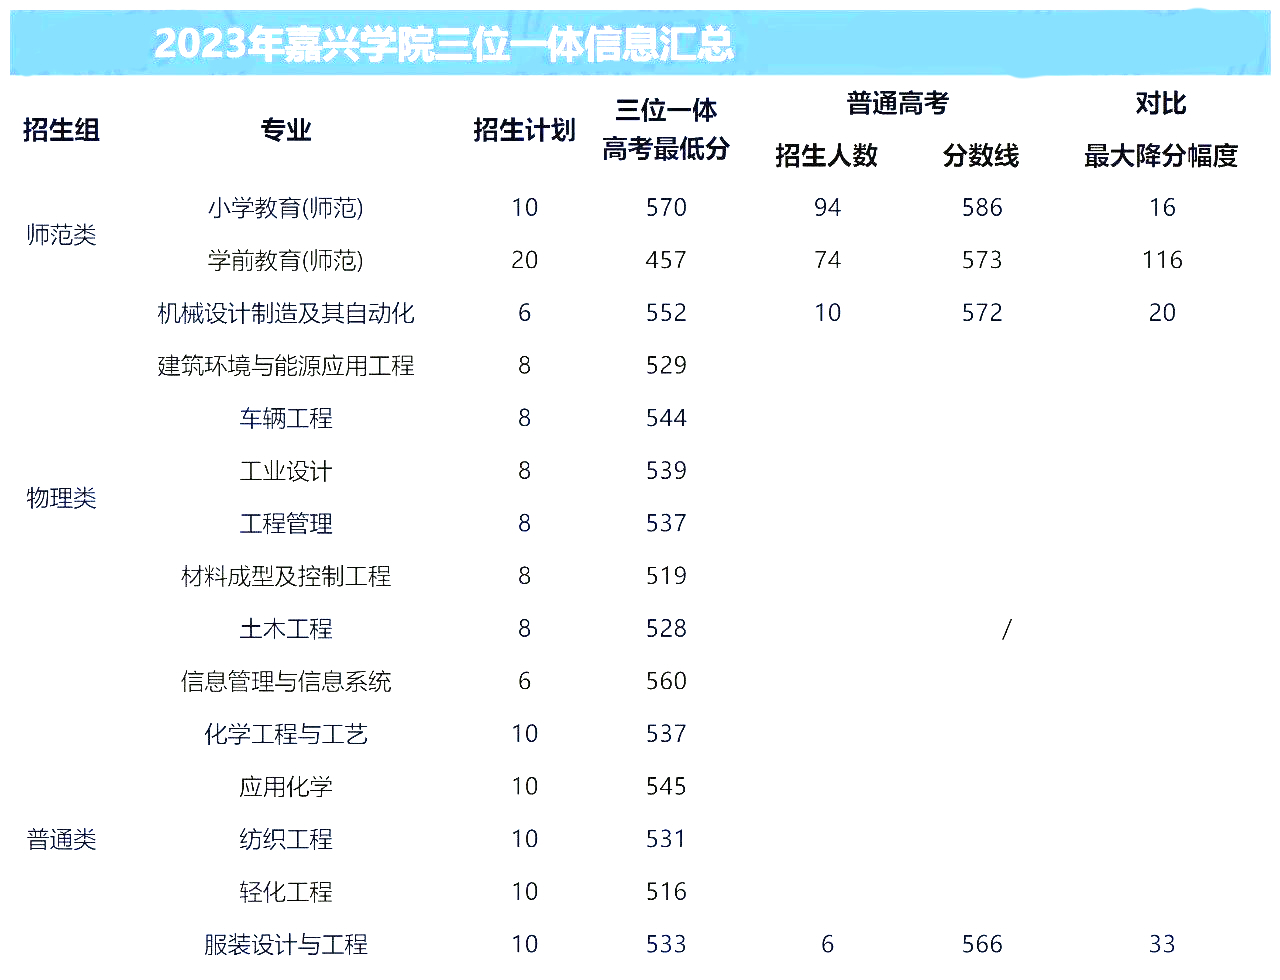 浙江嘉兴学院2023年三位一体招生对比平行批次录取分数情况